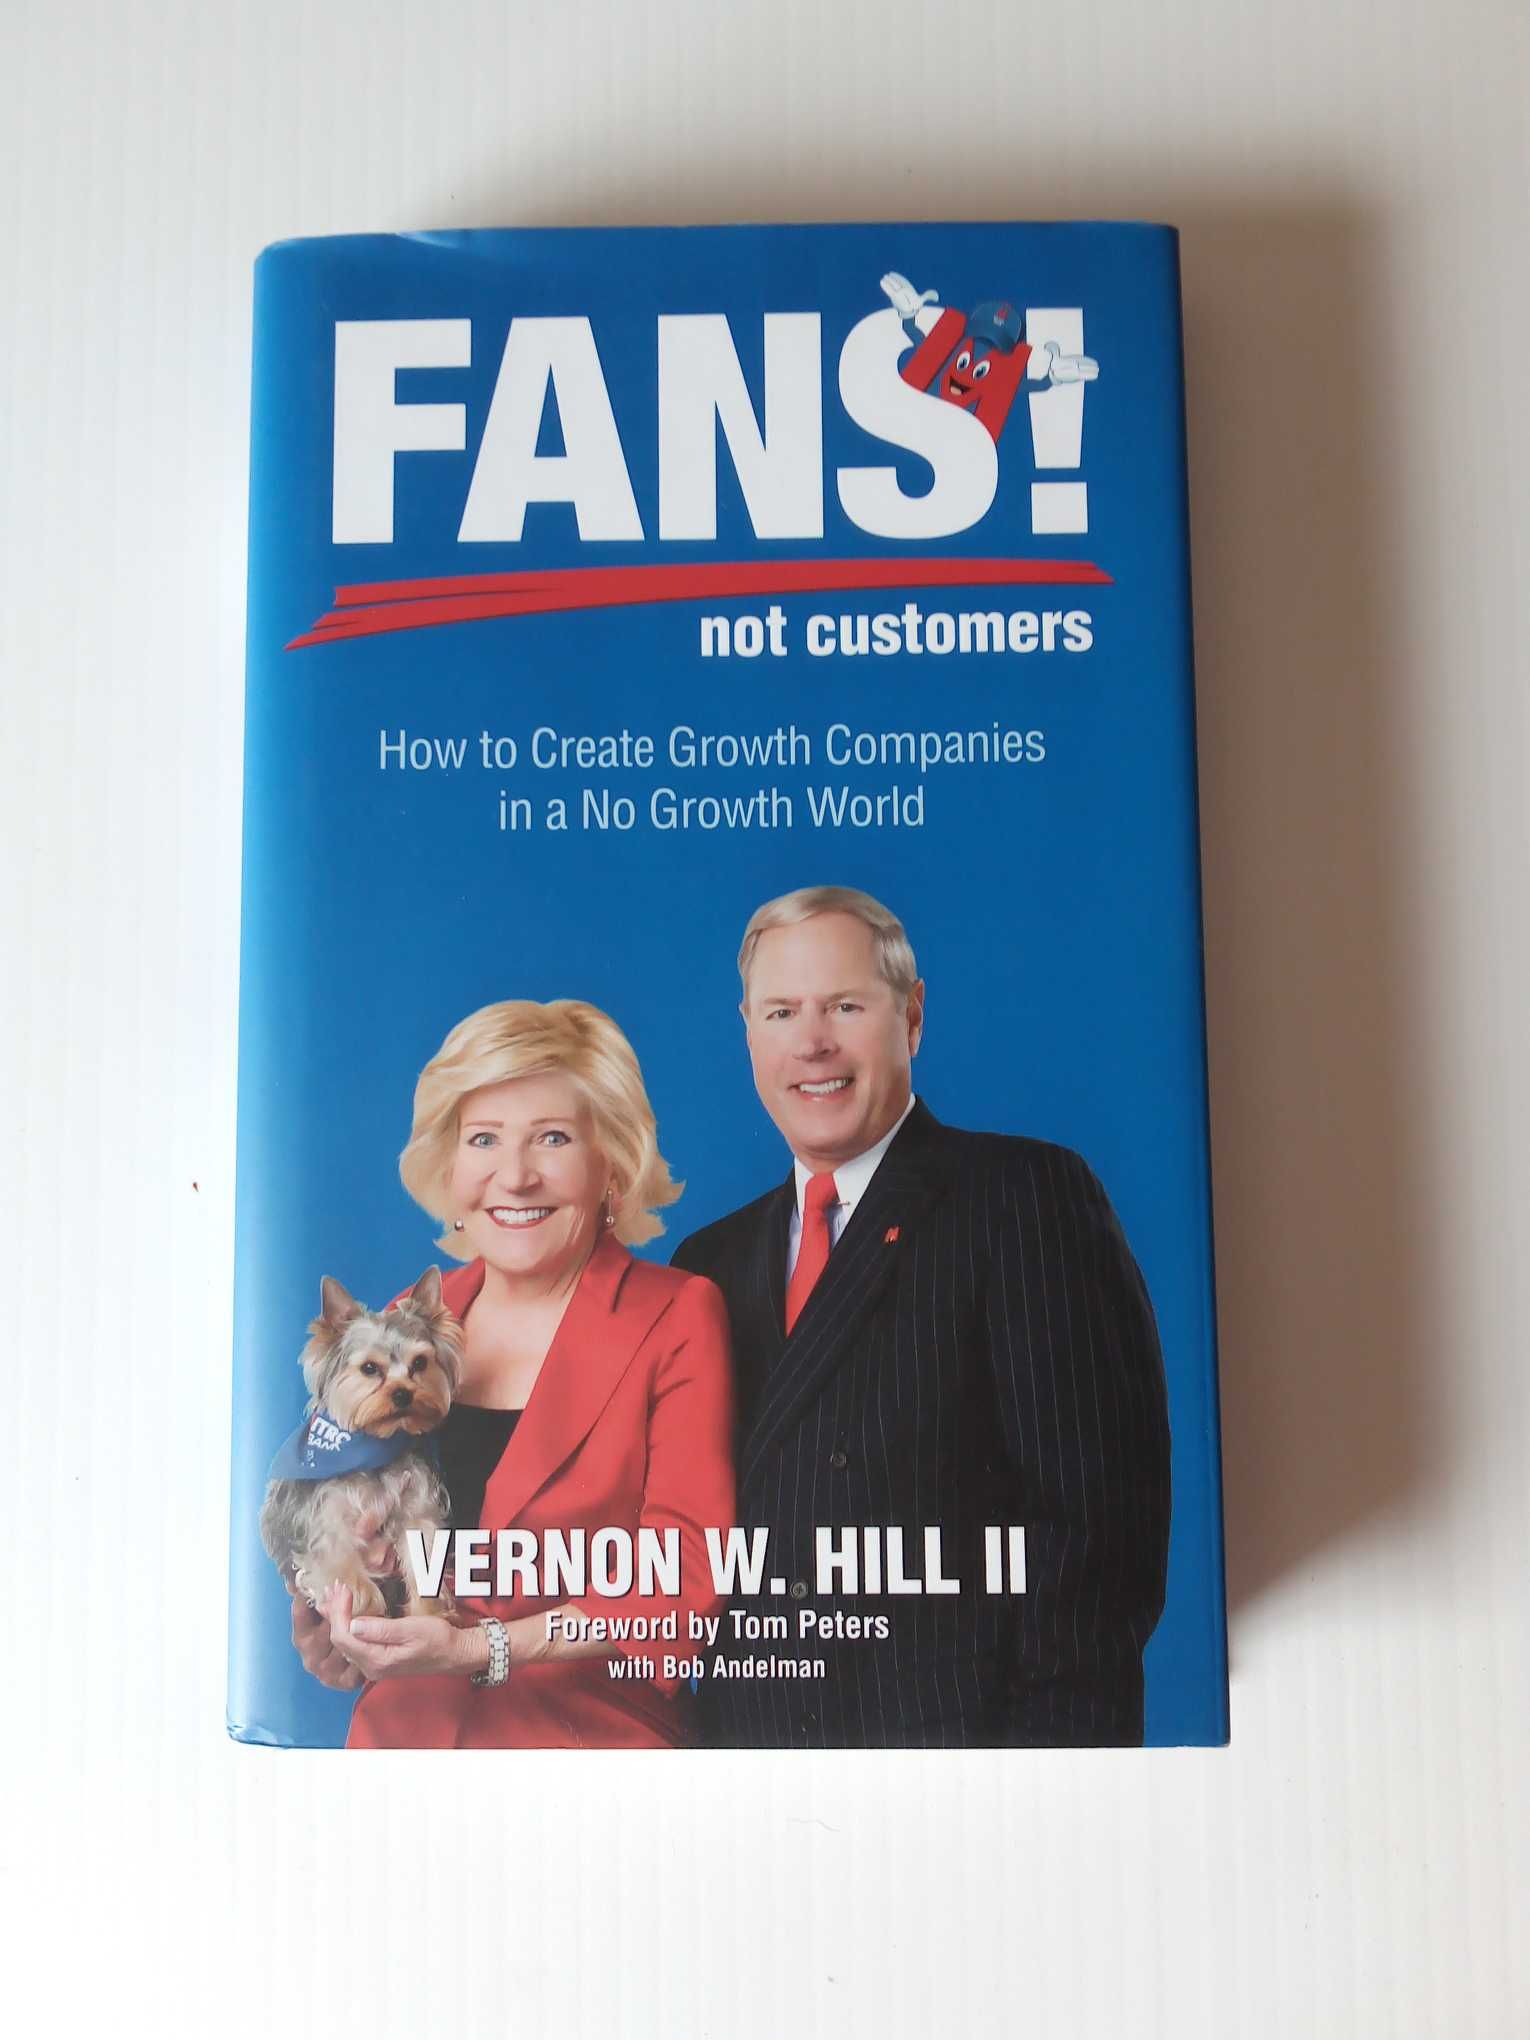 Livro "Fans! not customers", de Vernon W. Hill ll